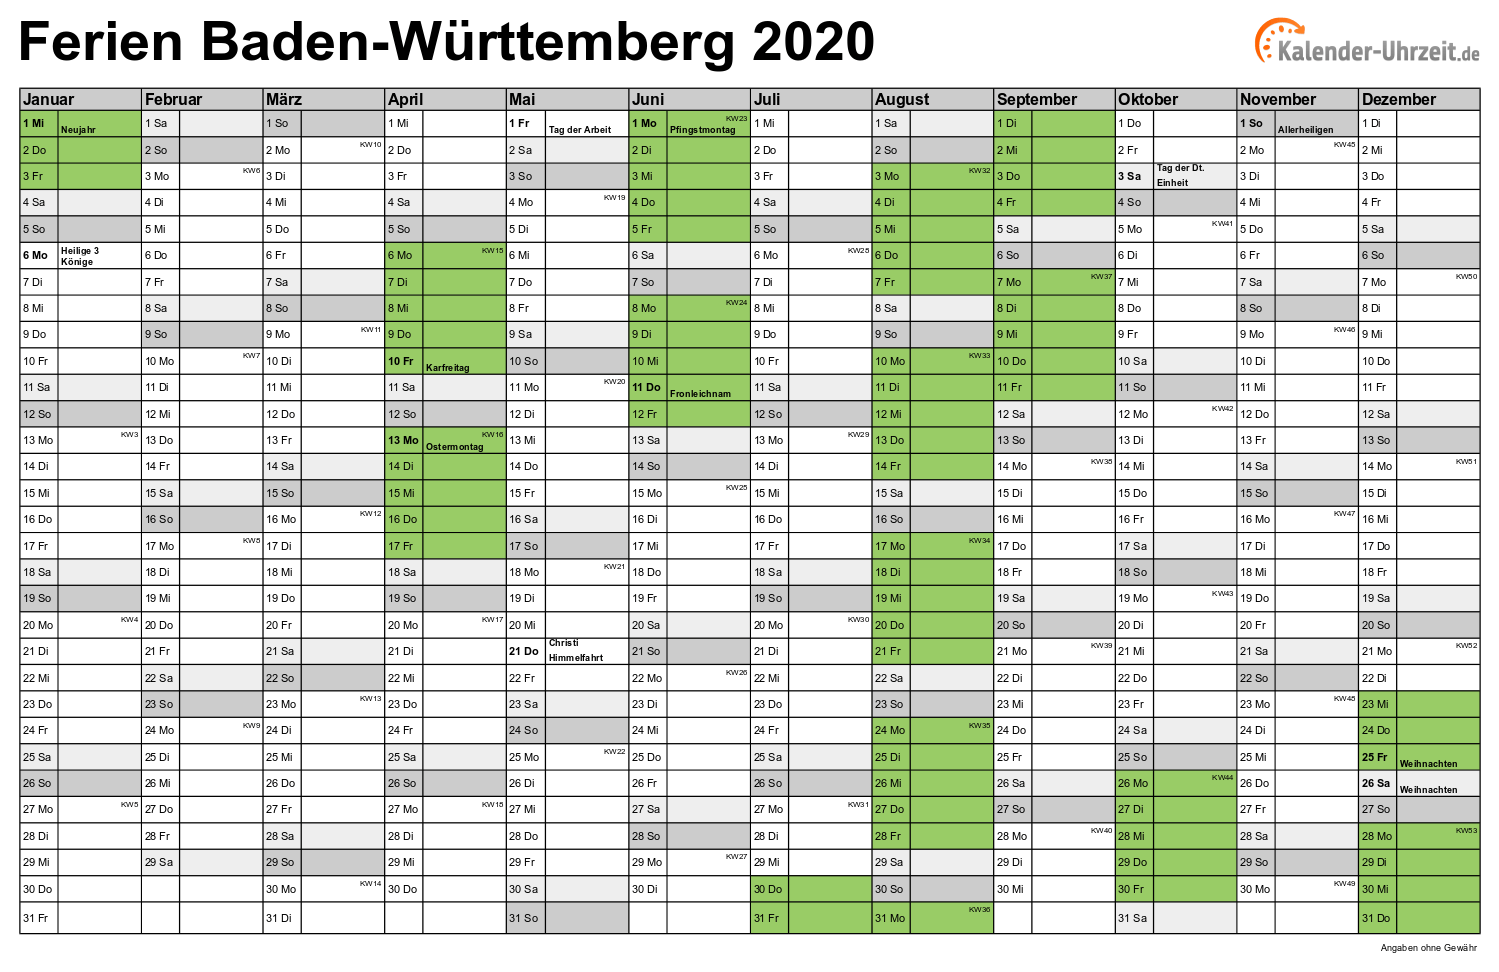 Ferien Baden-Württemberg 2020 - Ferienkalender zum Ausdrucken